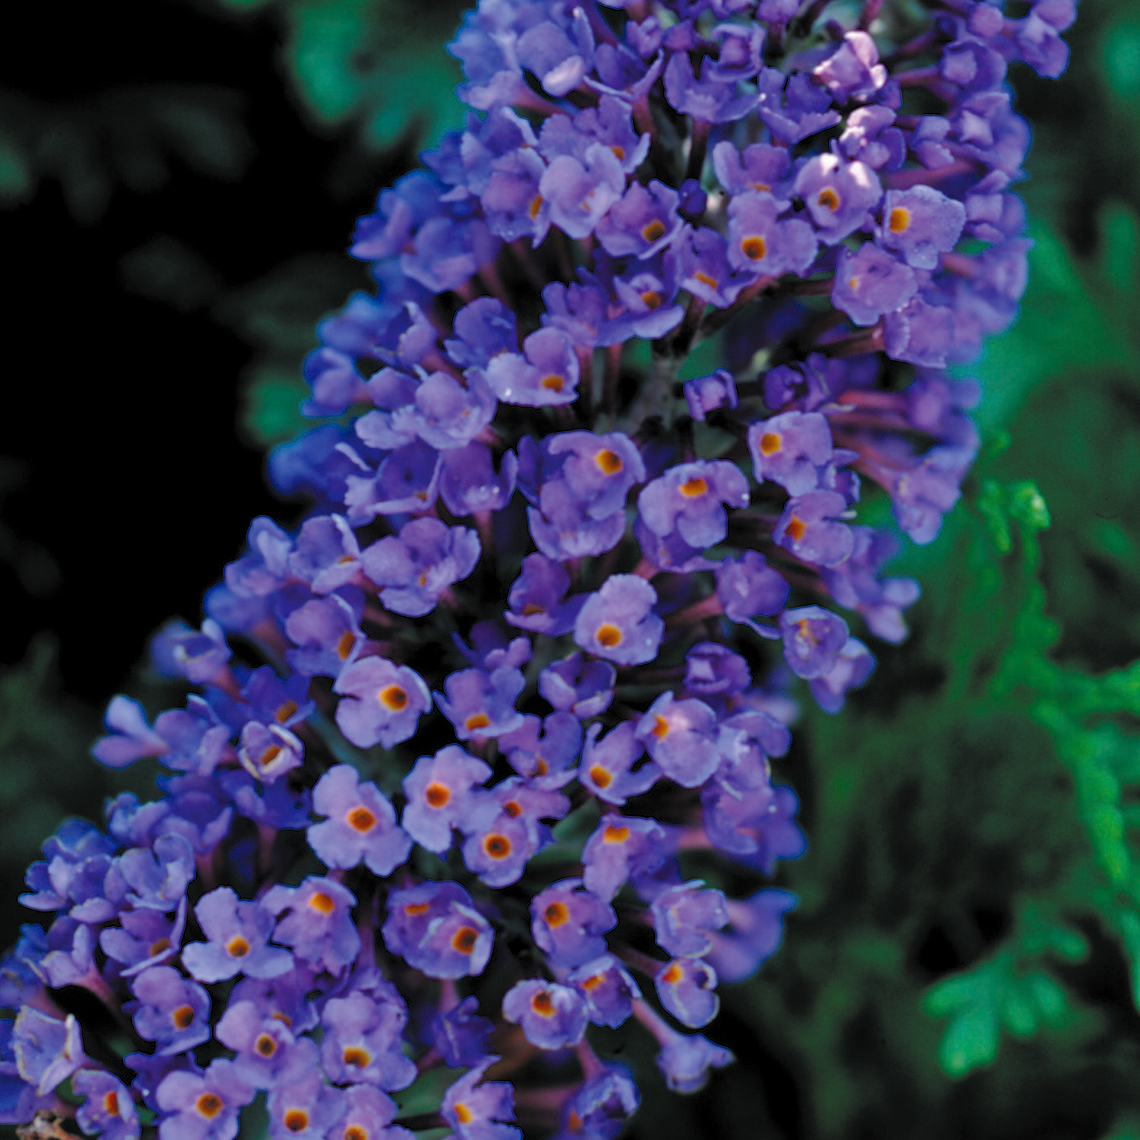 Close up of the deep blue Buddleia Ellen's Blue flowers